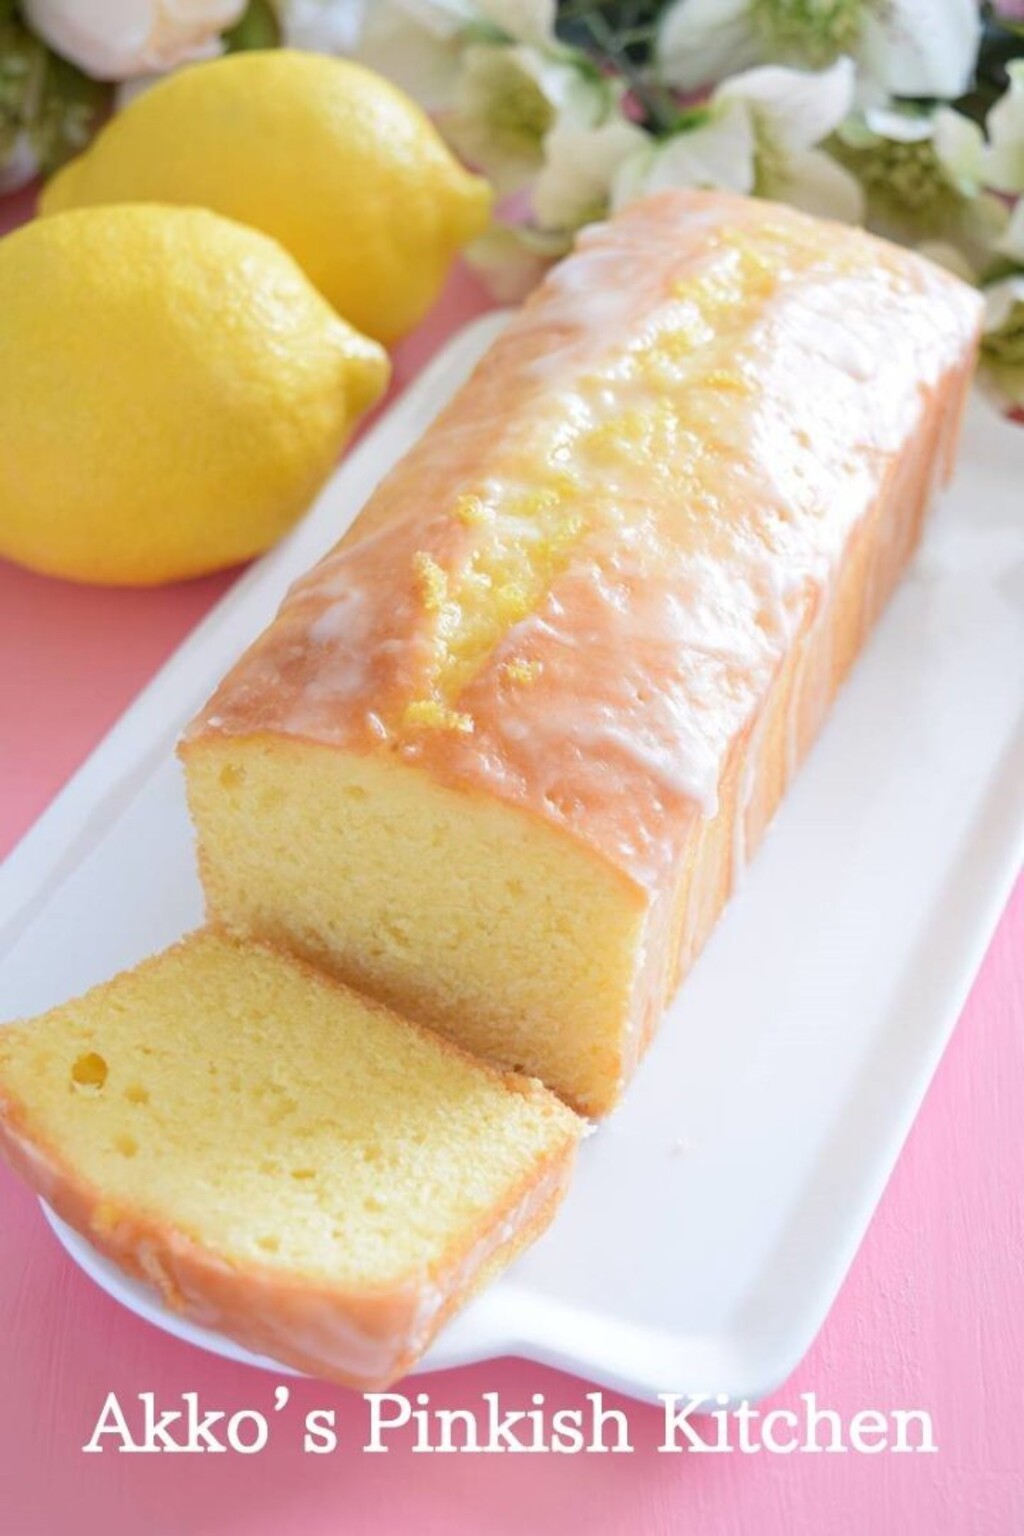 プロ仕様の黄金レシピ ケーク オ シトロン 光り輝くレモンのケーキ Limia リミア